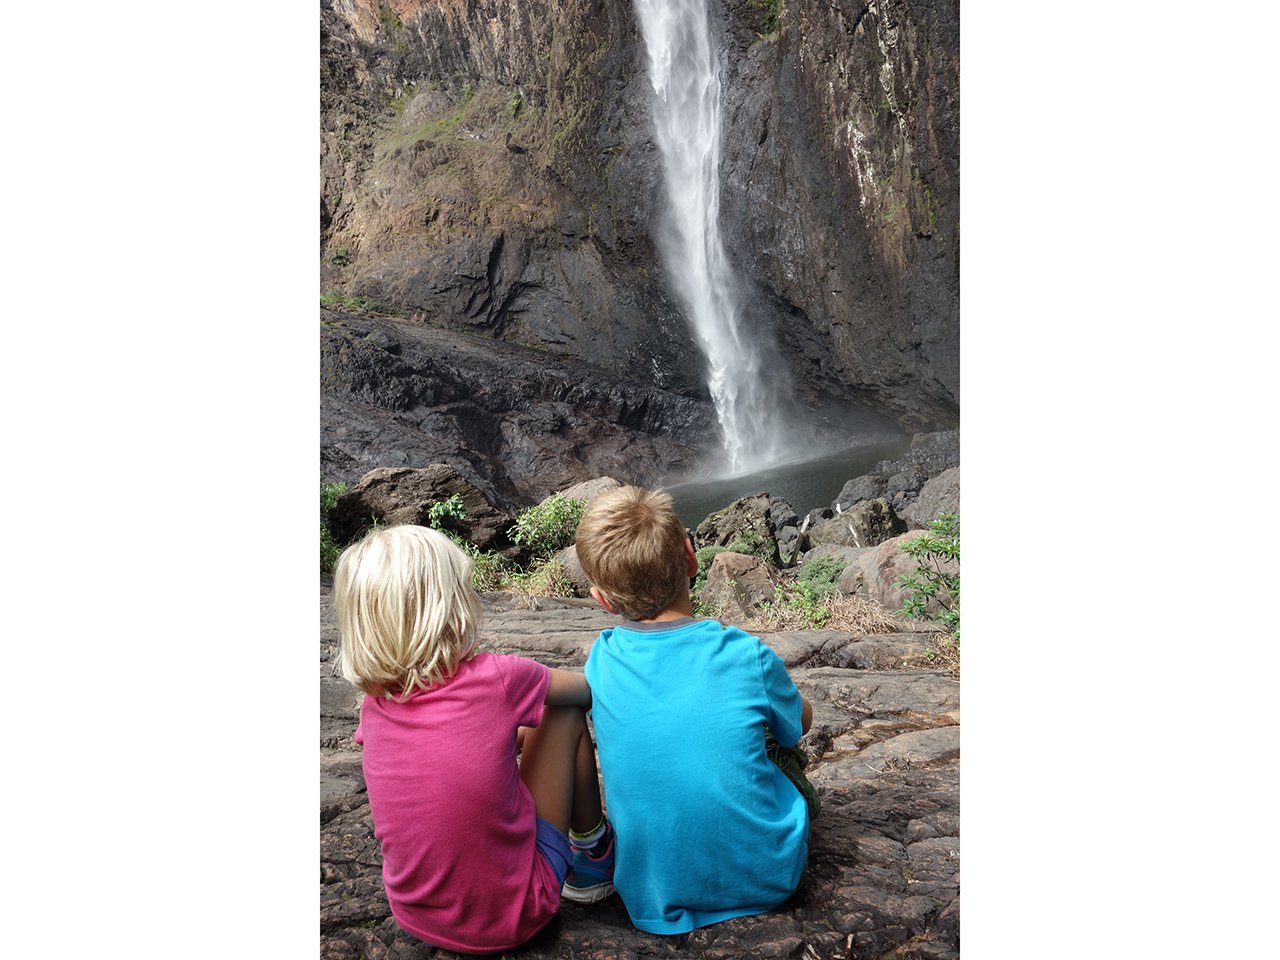 所罗门的孩子们正在欣赏瀑布